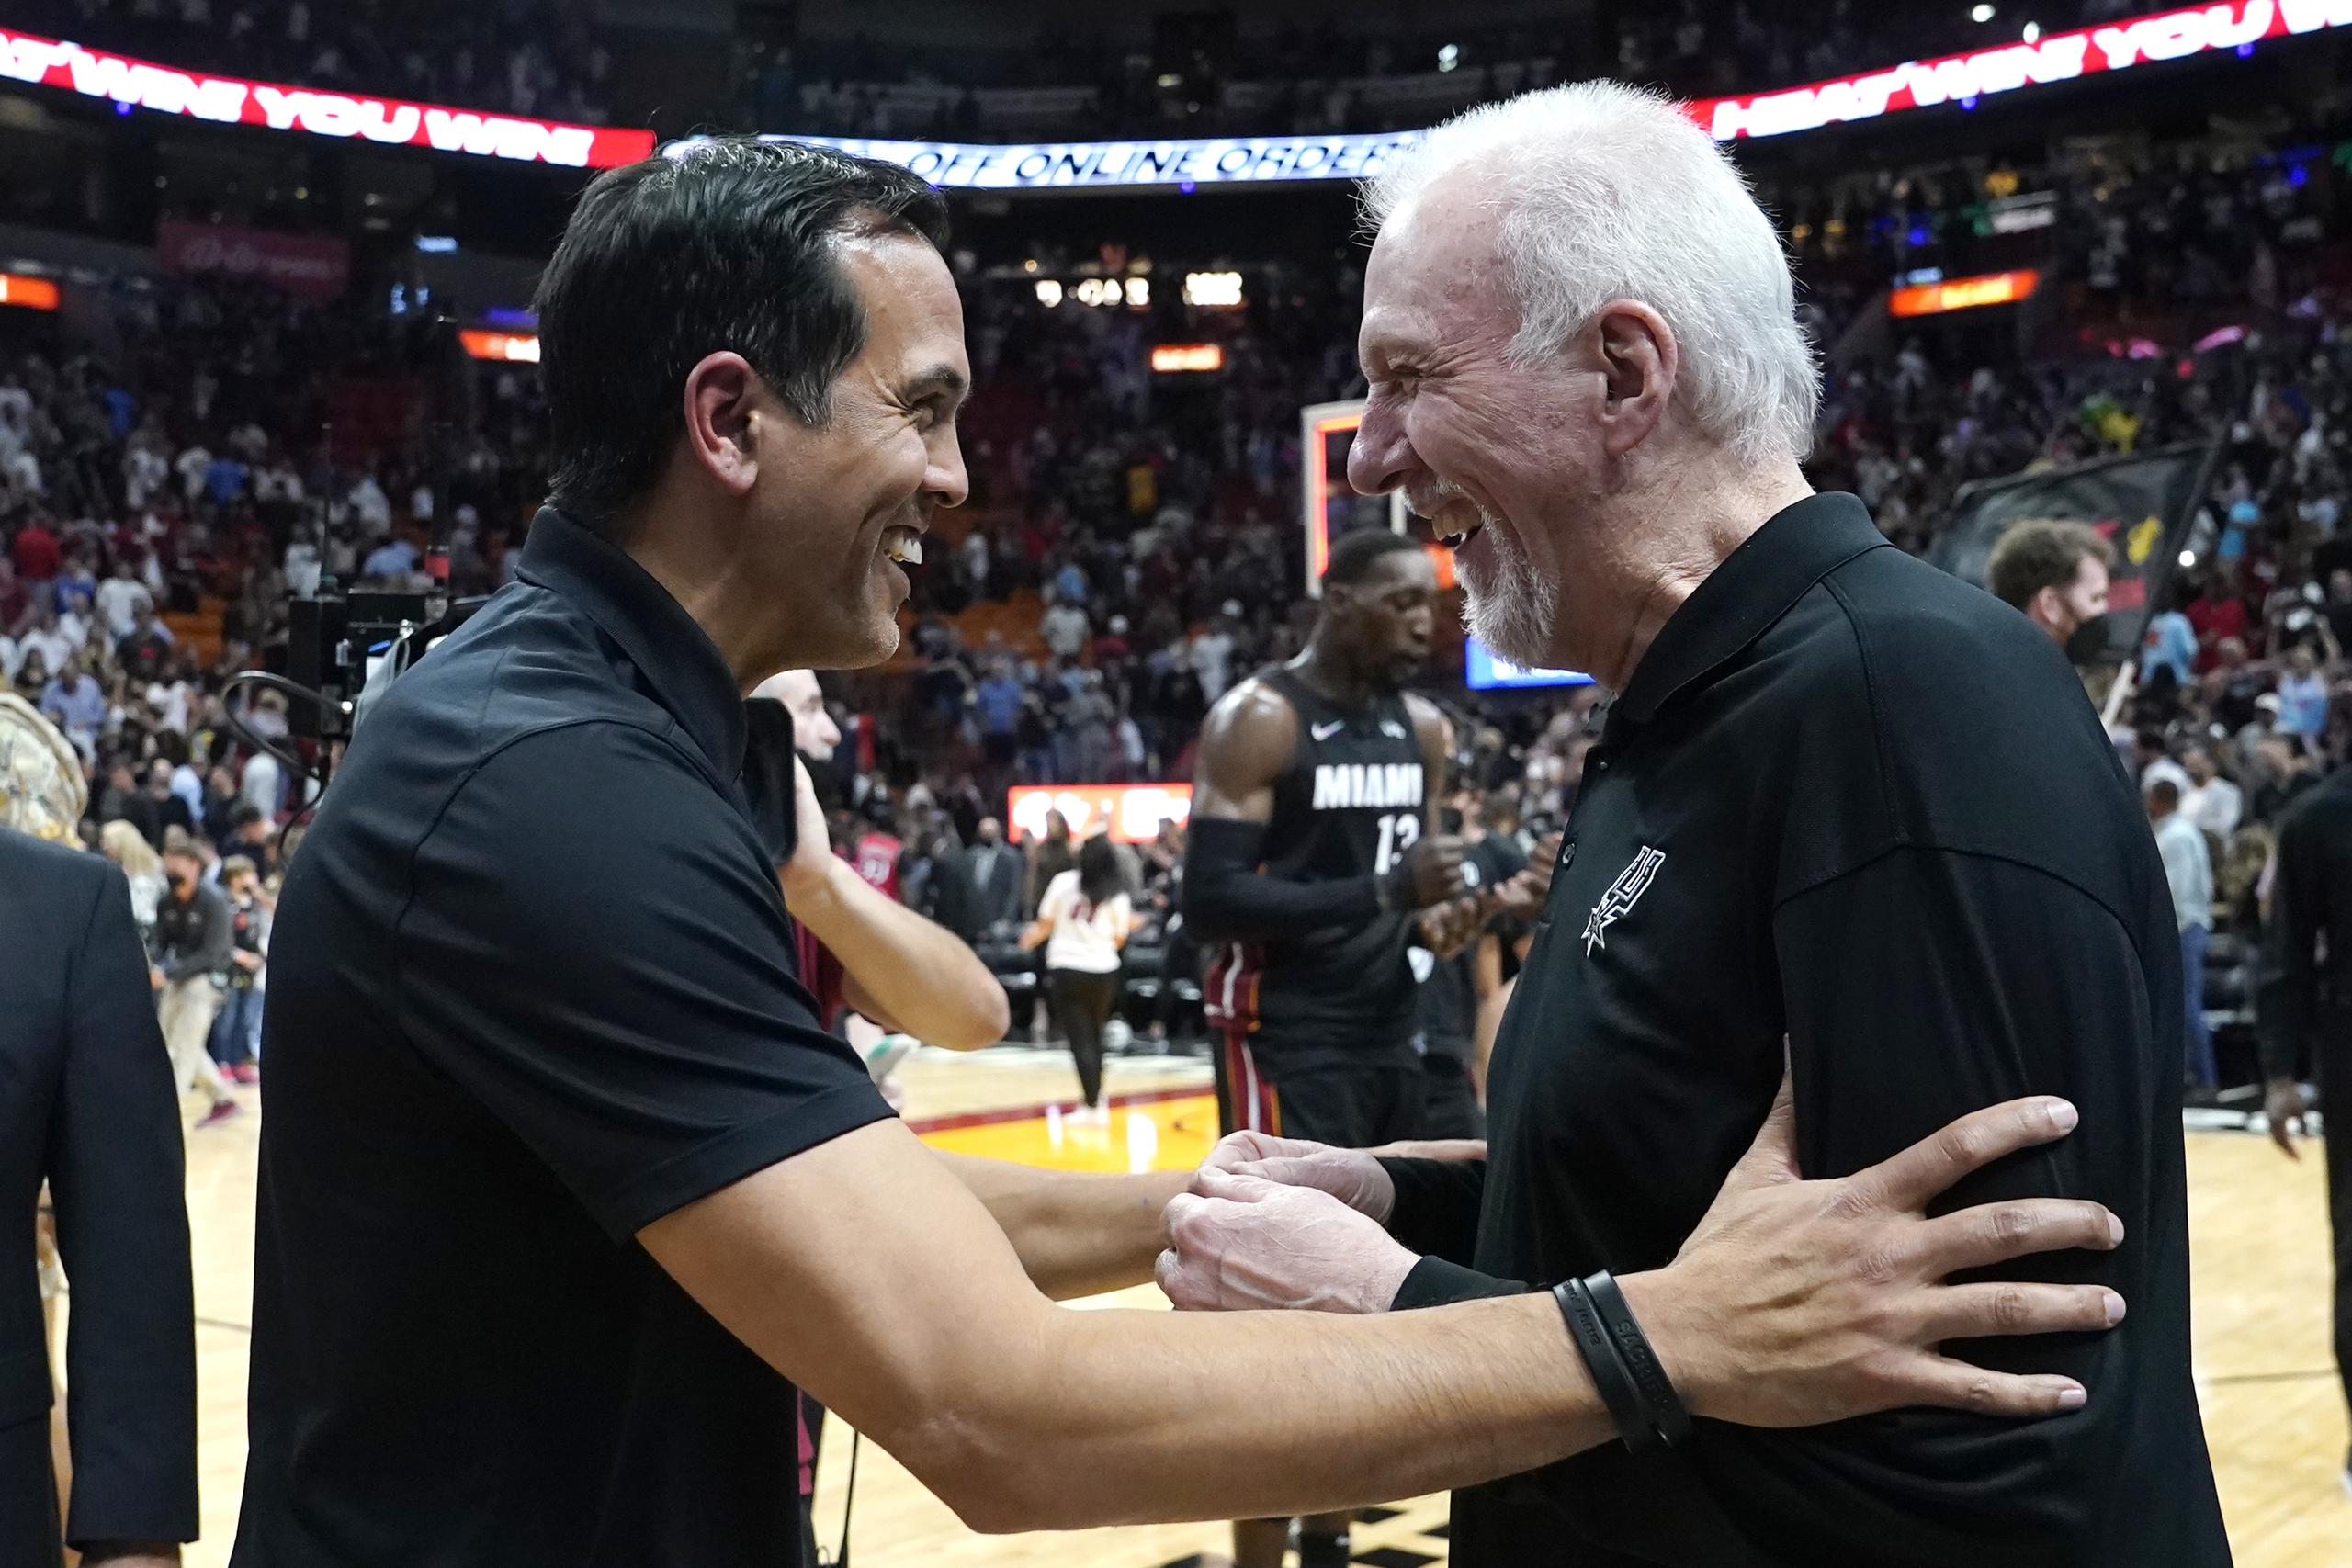 El entrenador del Heat de Miami, Erik Spoelstra, estrecha manos con Popovich. Él y otros dirigentes y jugadores dicen que Popovich es una persona muy jovial, distinta al hombre serio que vende frente a las cámaras.